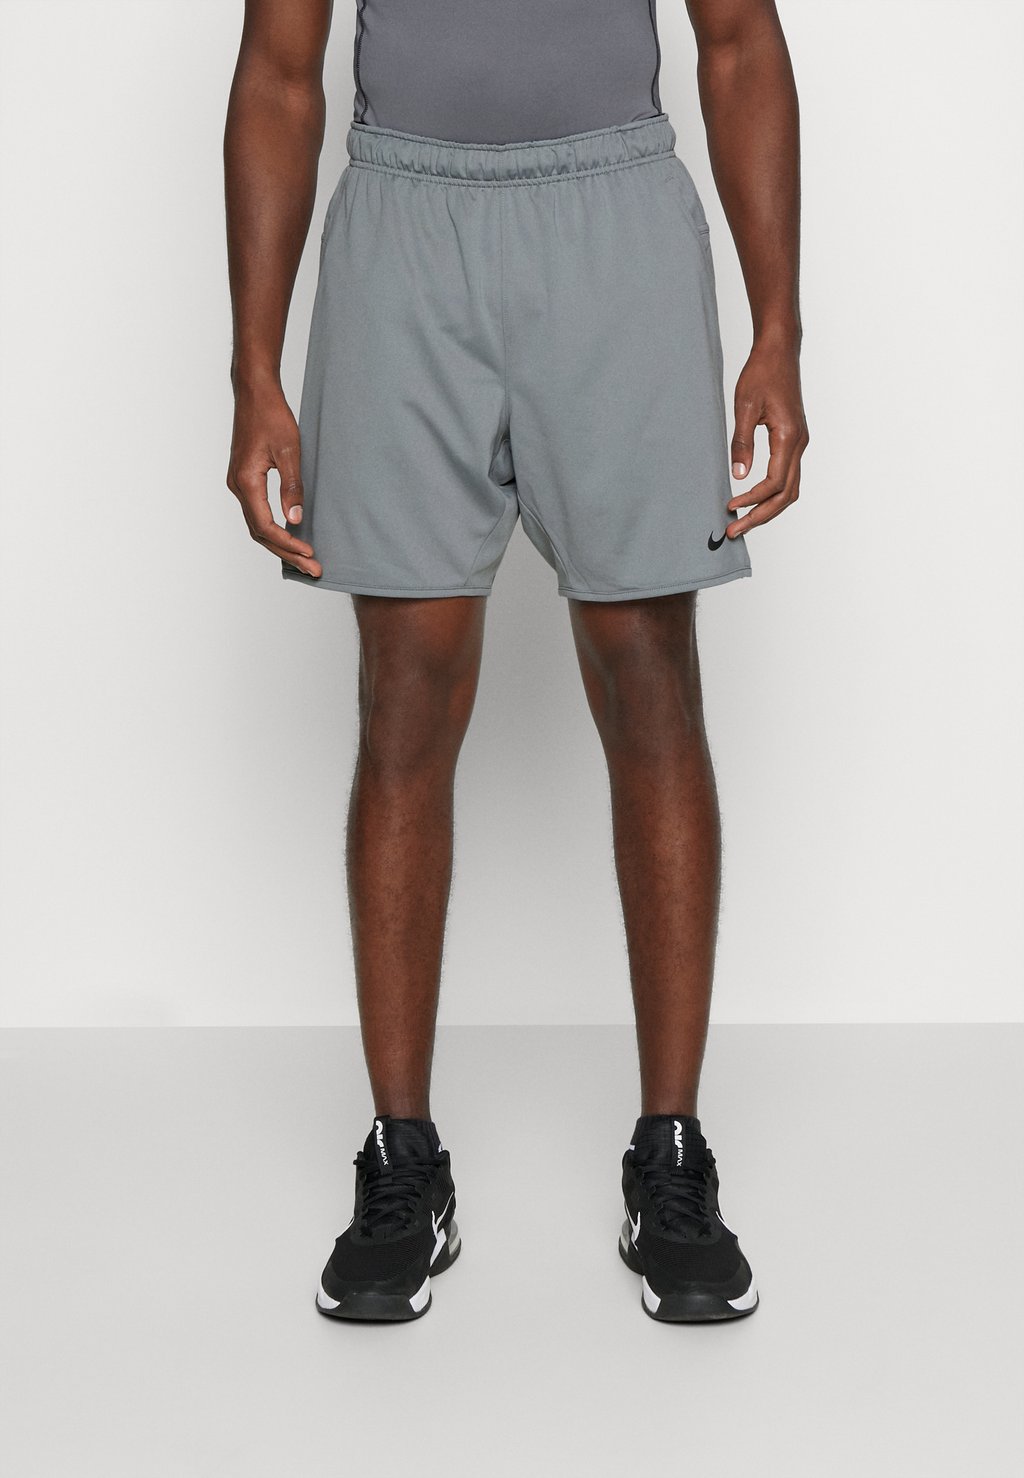 Спортивные шорты TOTALITY Nike, дымчато-серый/черный